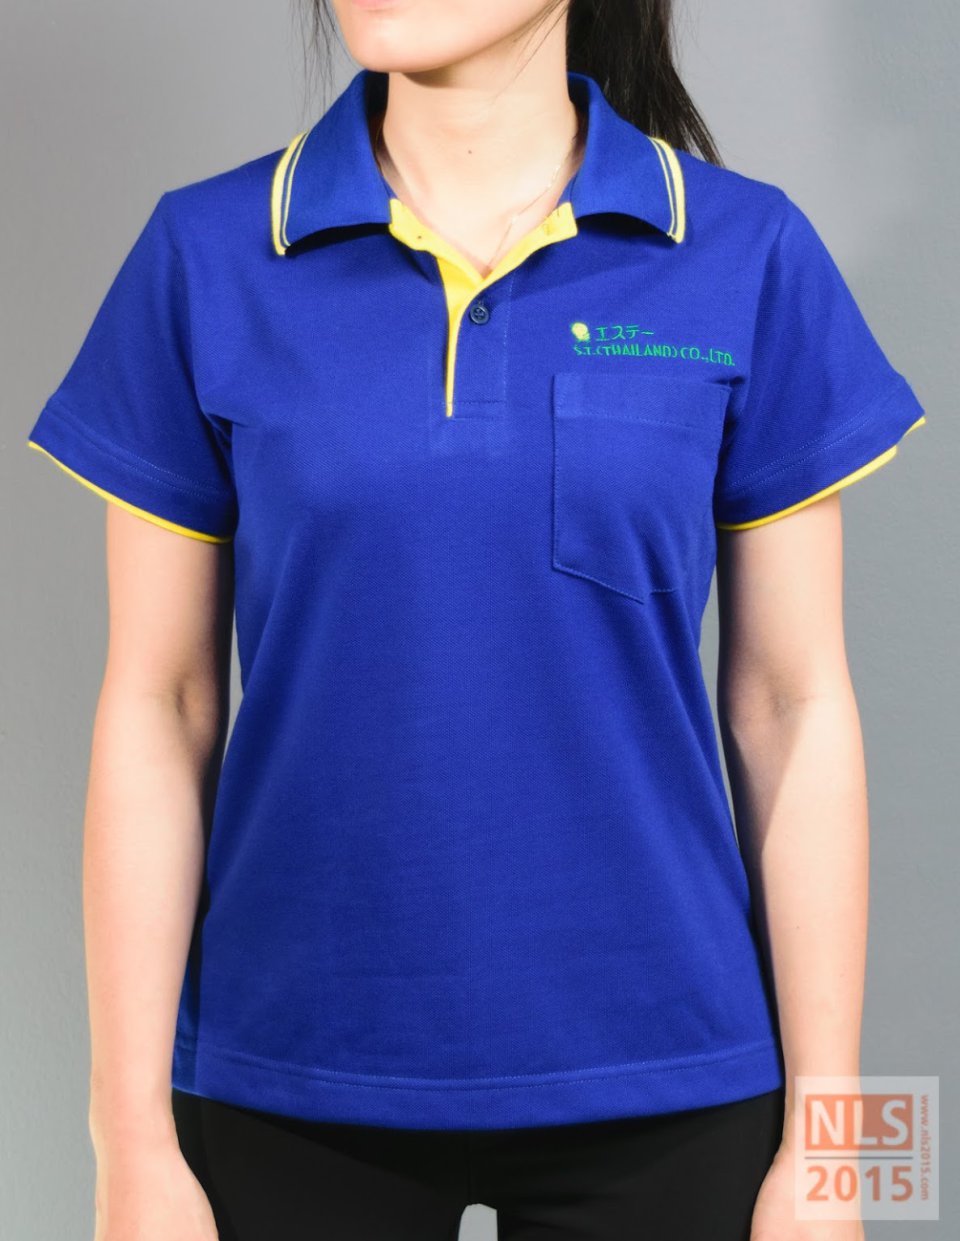 ตัวอย่างเสื้อโปโลบริษัท S.T. (THAILAND) CO.,LTD / นลินสิริ รับผลิตเสื้อโปโลยูนิฟอร์มพนักงาน พร้อมปักโลโก้รูปที่ 